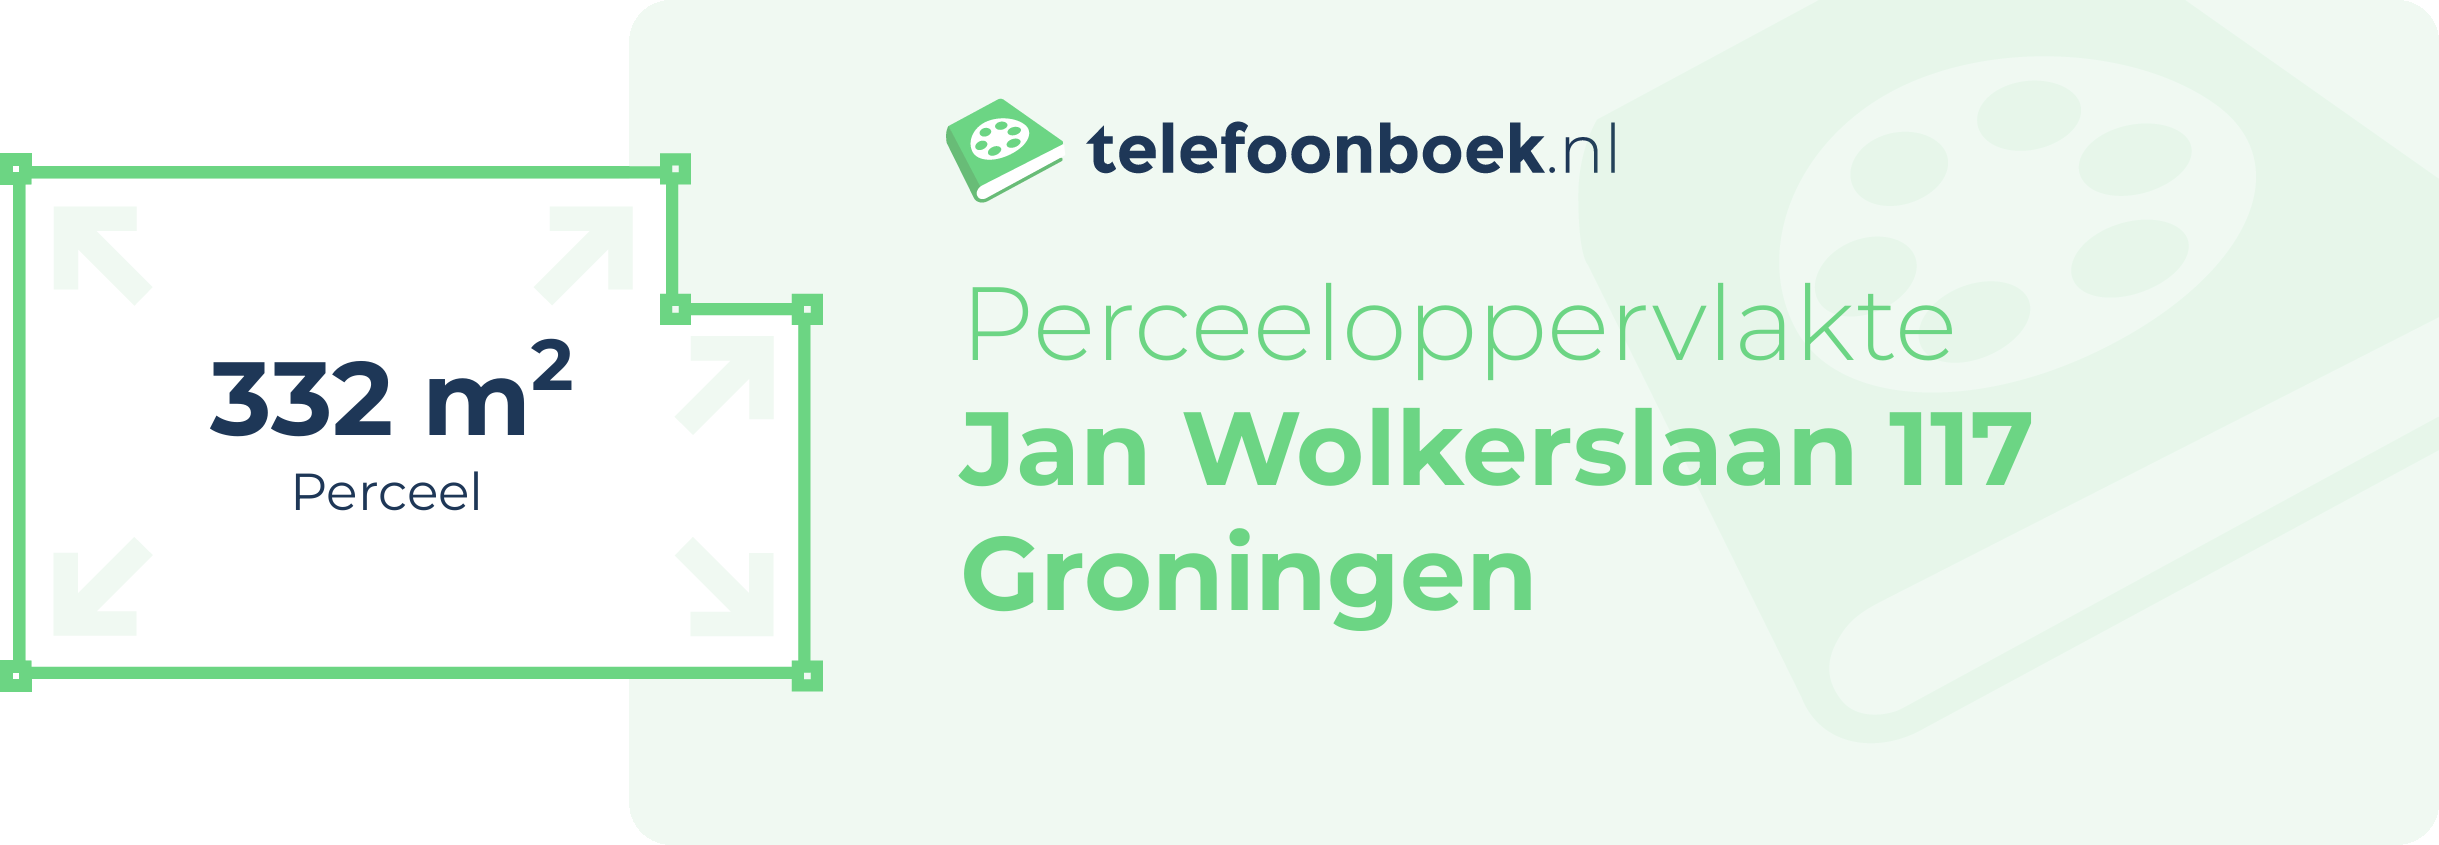 Perceeloppervlakte Jan Wolkerslaan 117 Groningen